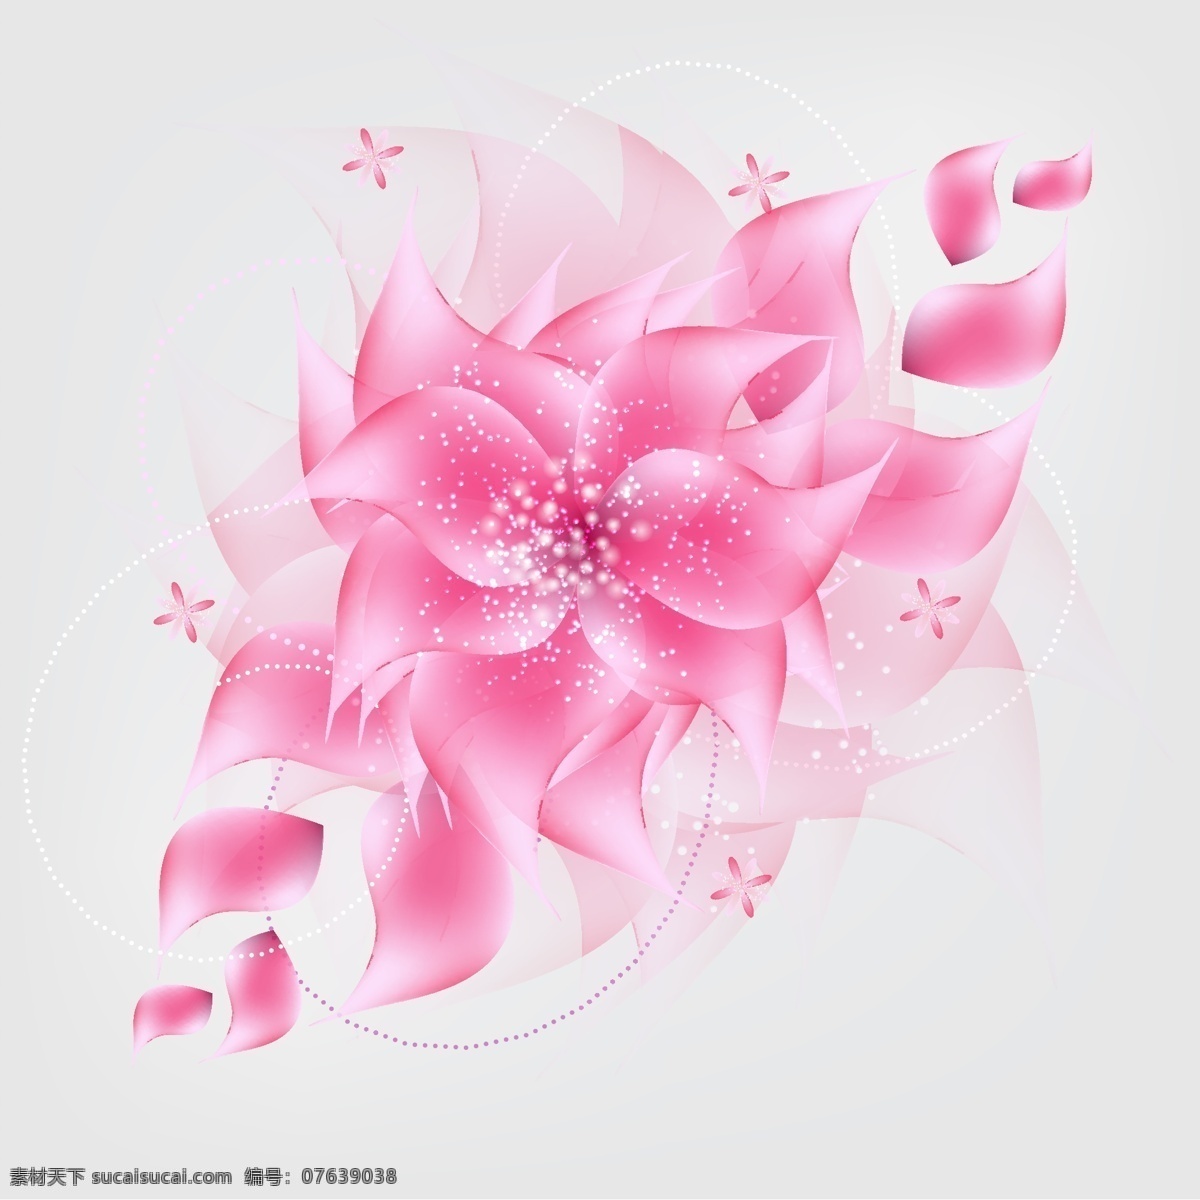 粉色 抽象 矢量 花艺 术 背景 图 背景图 花 矢量素材 艺术 矢量图 花纹花边